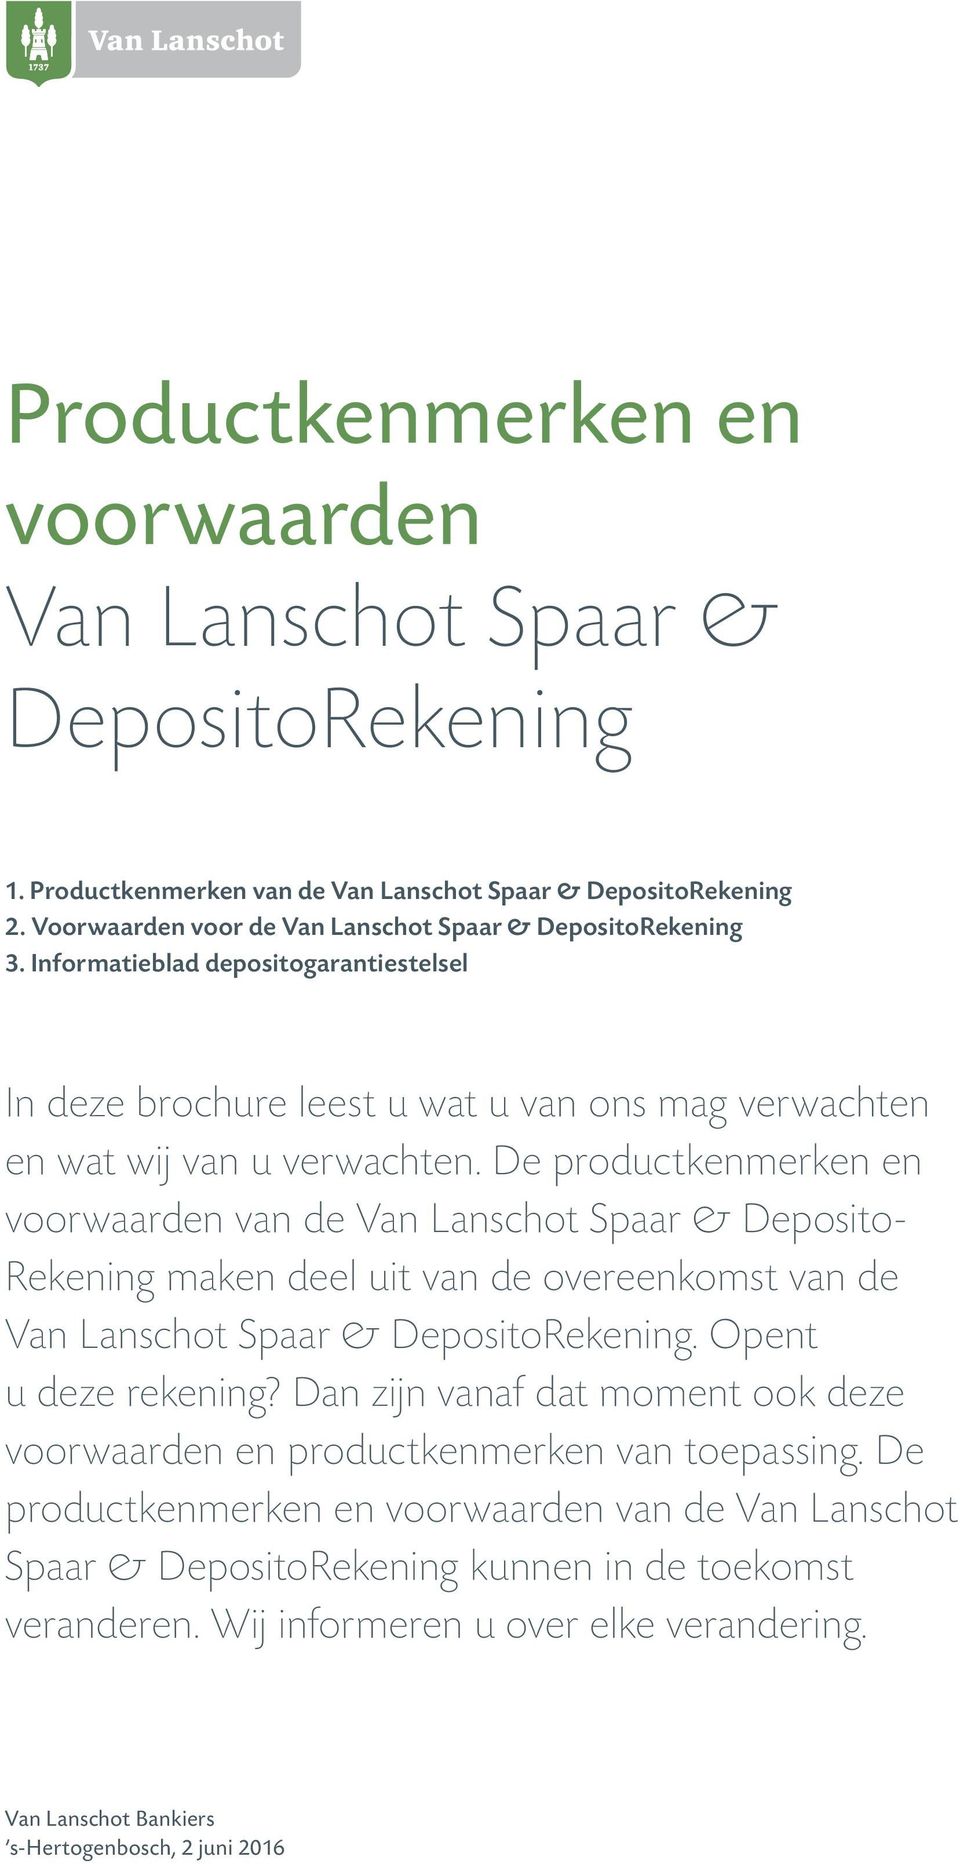 De productkenmerken en voorwaarden van de Van Lanschot Spaar & Deposito Rekening maken deel uit van de overeenkomst van de Van Lanschot Spaar & DepositoRekening. Opent u deze rekening?